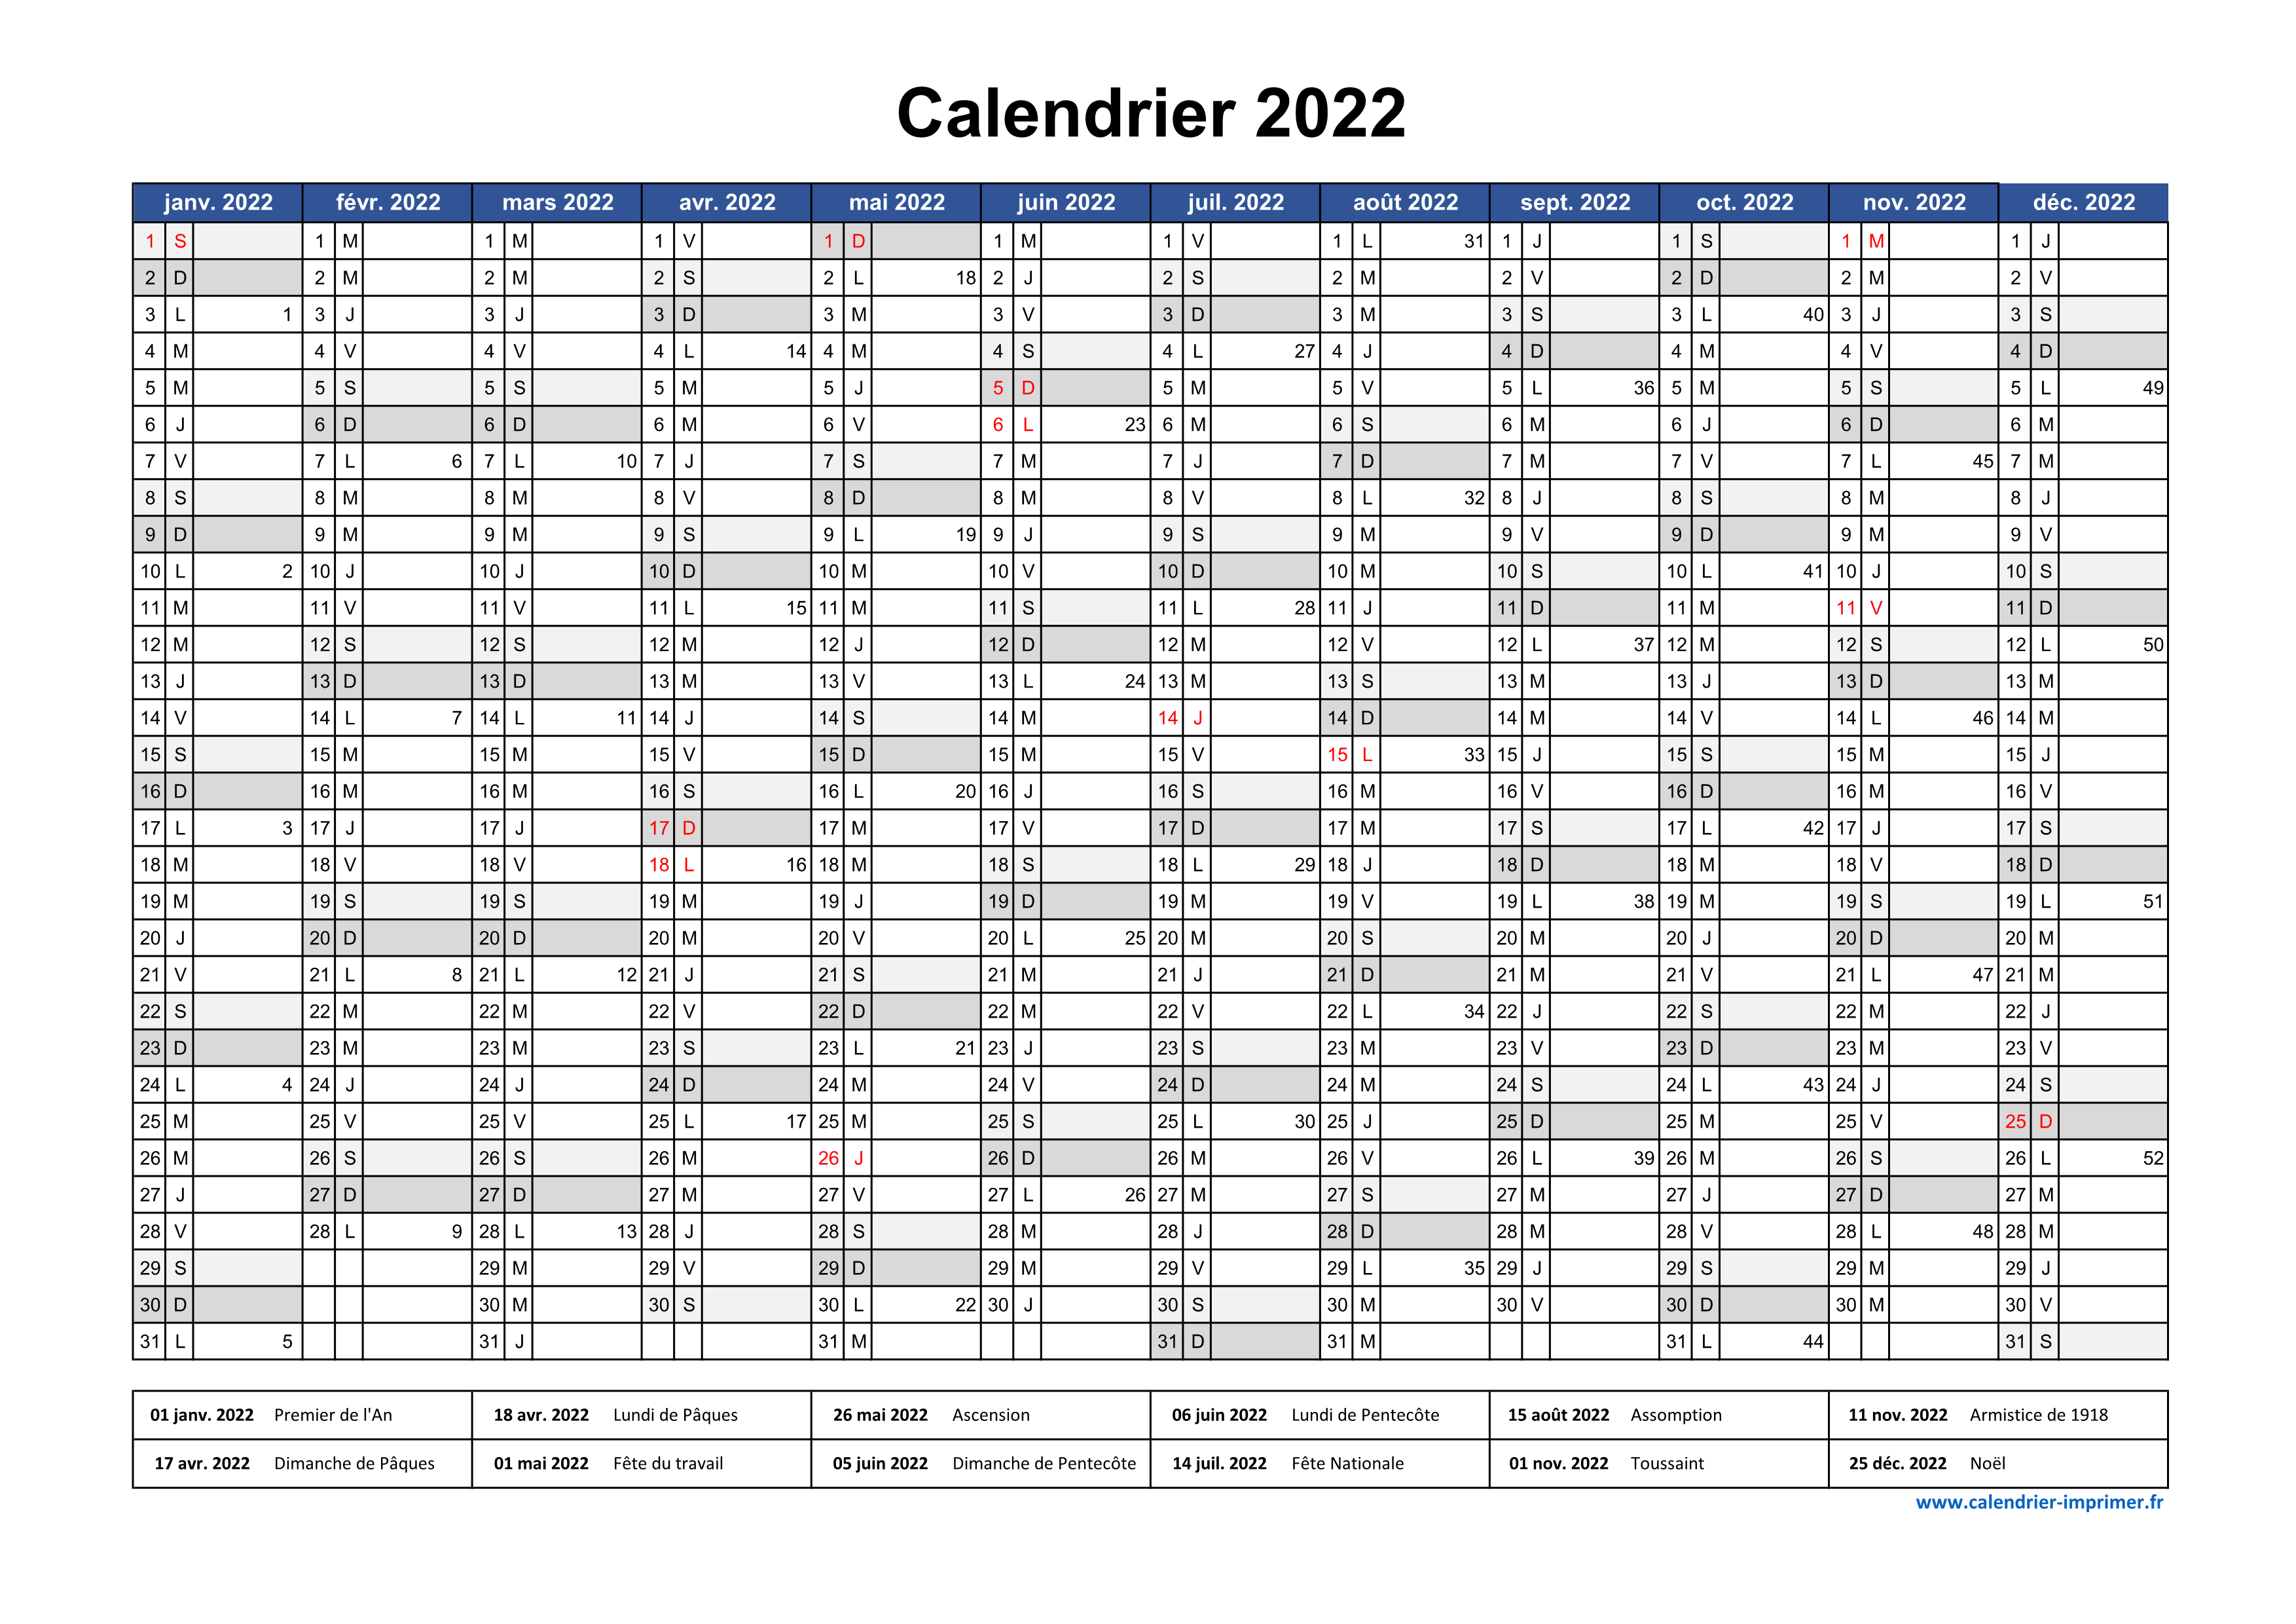 Calendrier 2022 à imprimer PDF et Excel